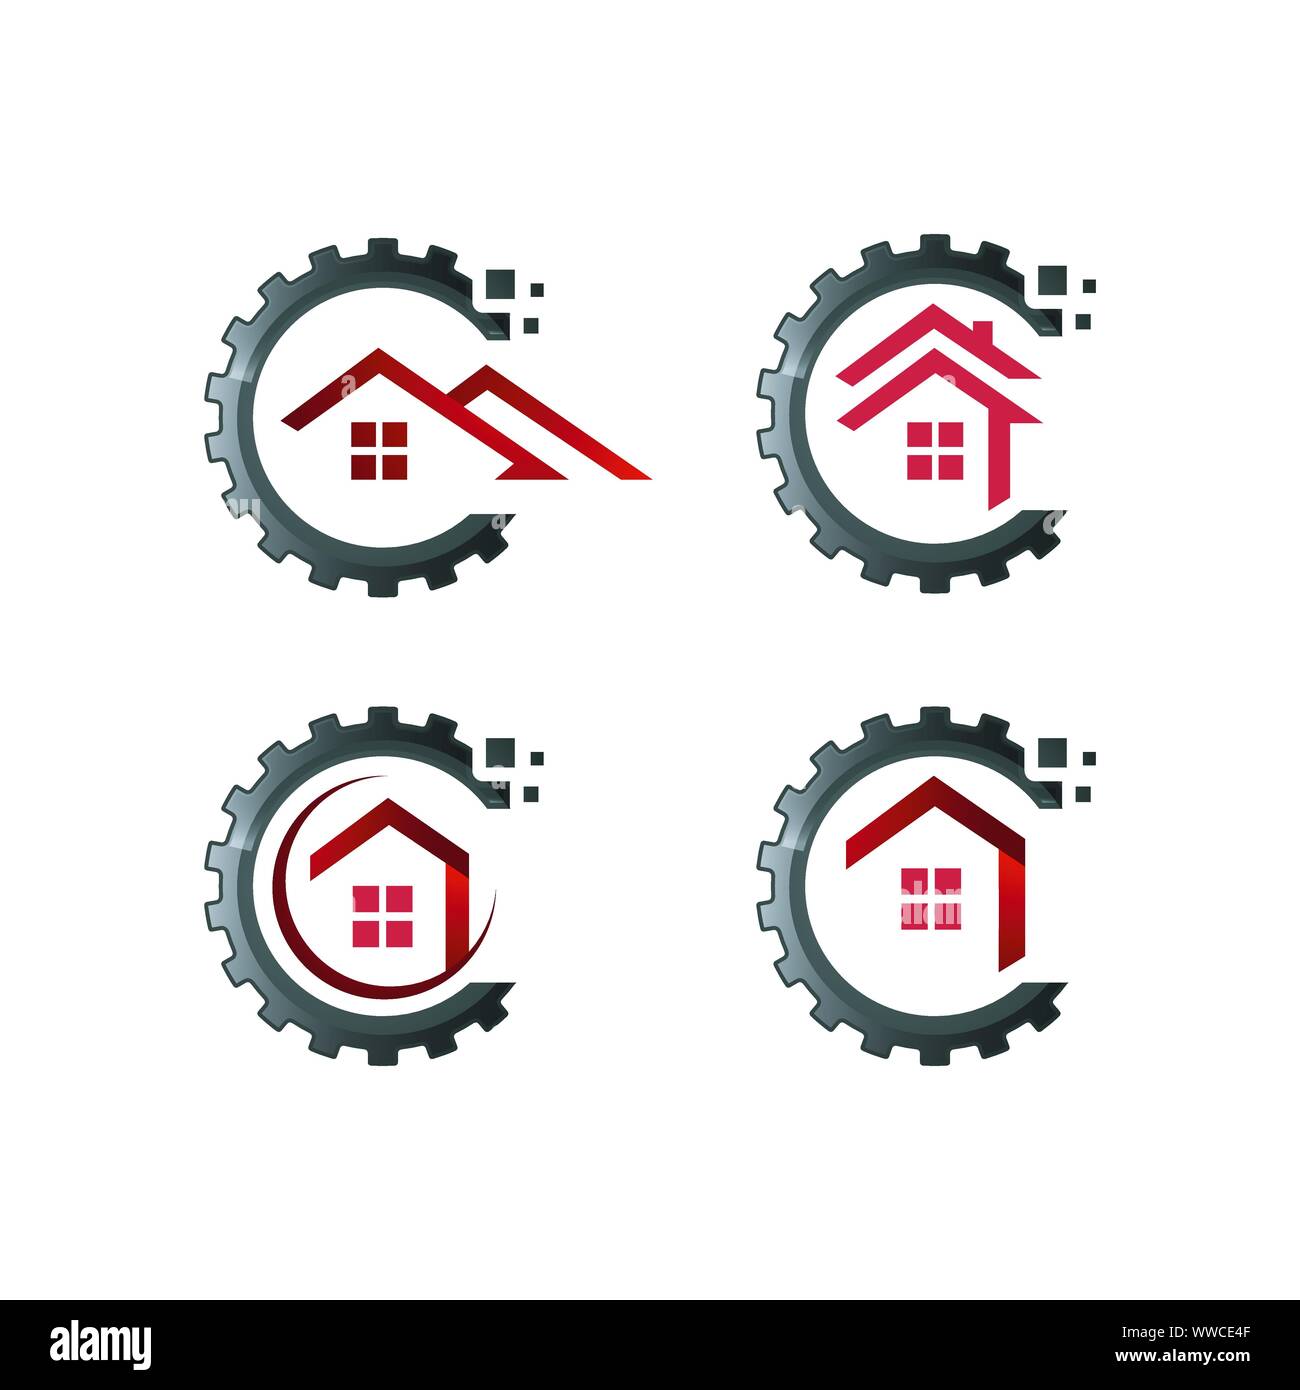 Konzept und Idee von Apartment Haus immo Logo Design Vector home Hochbau Architektur Symbol Stock Vektor